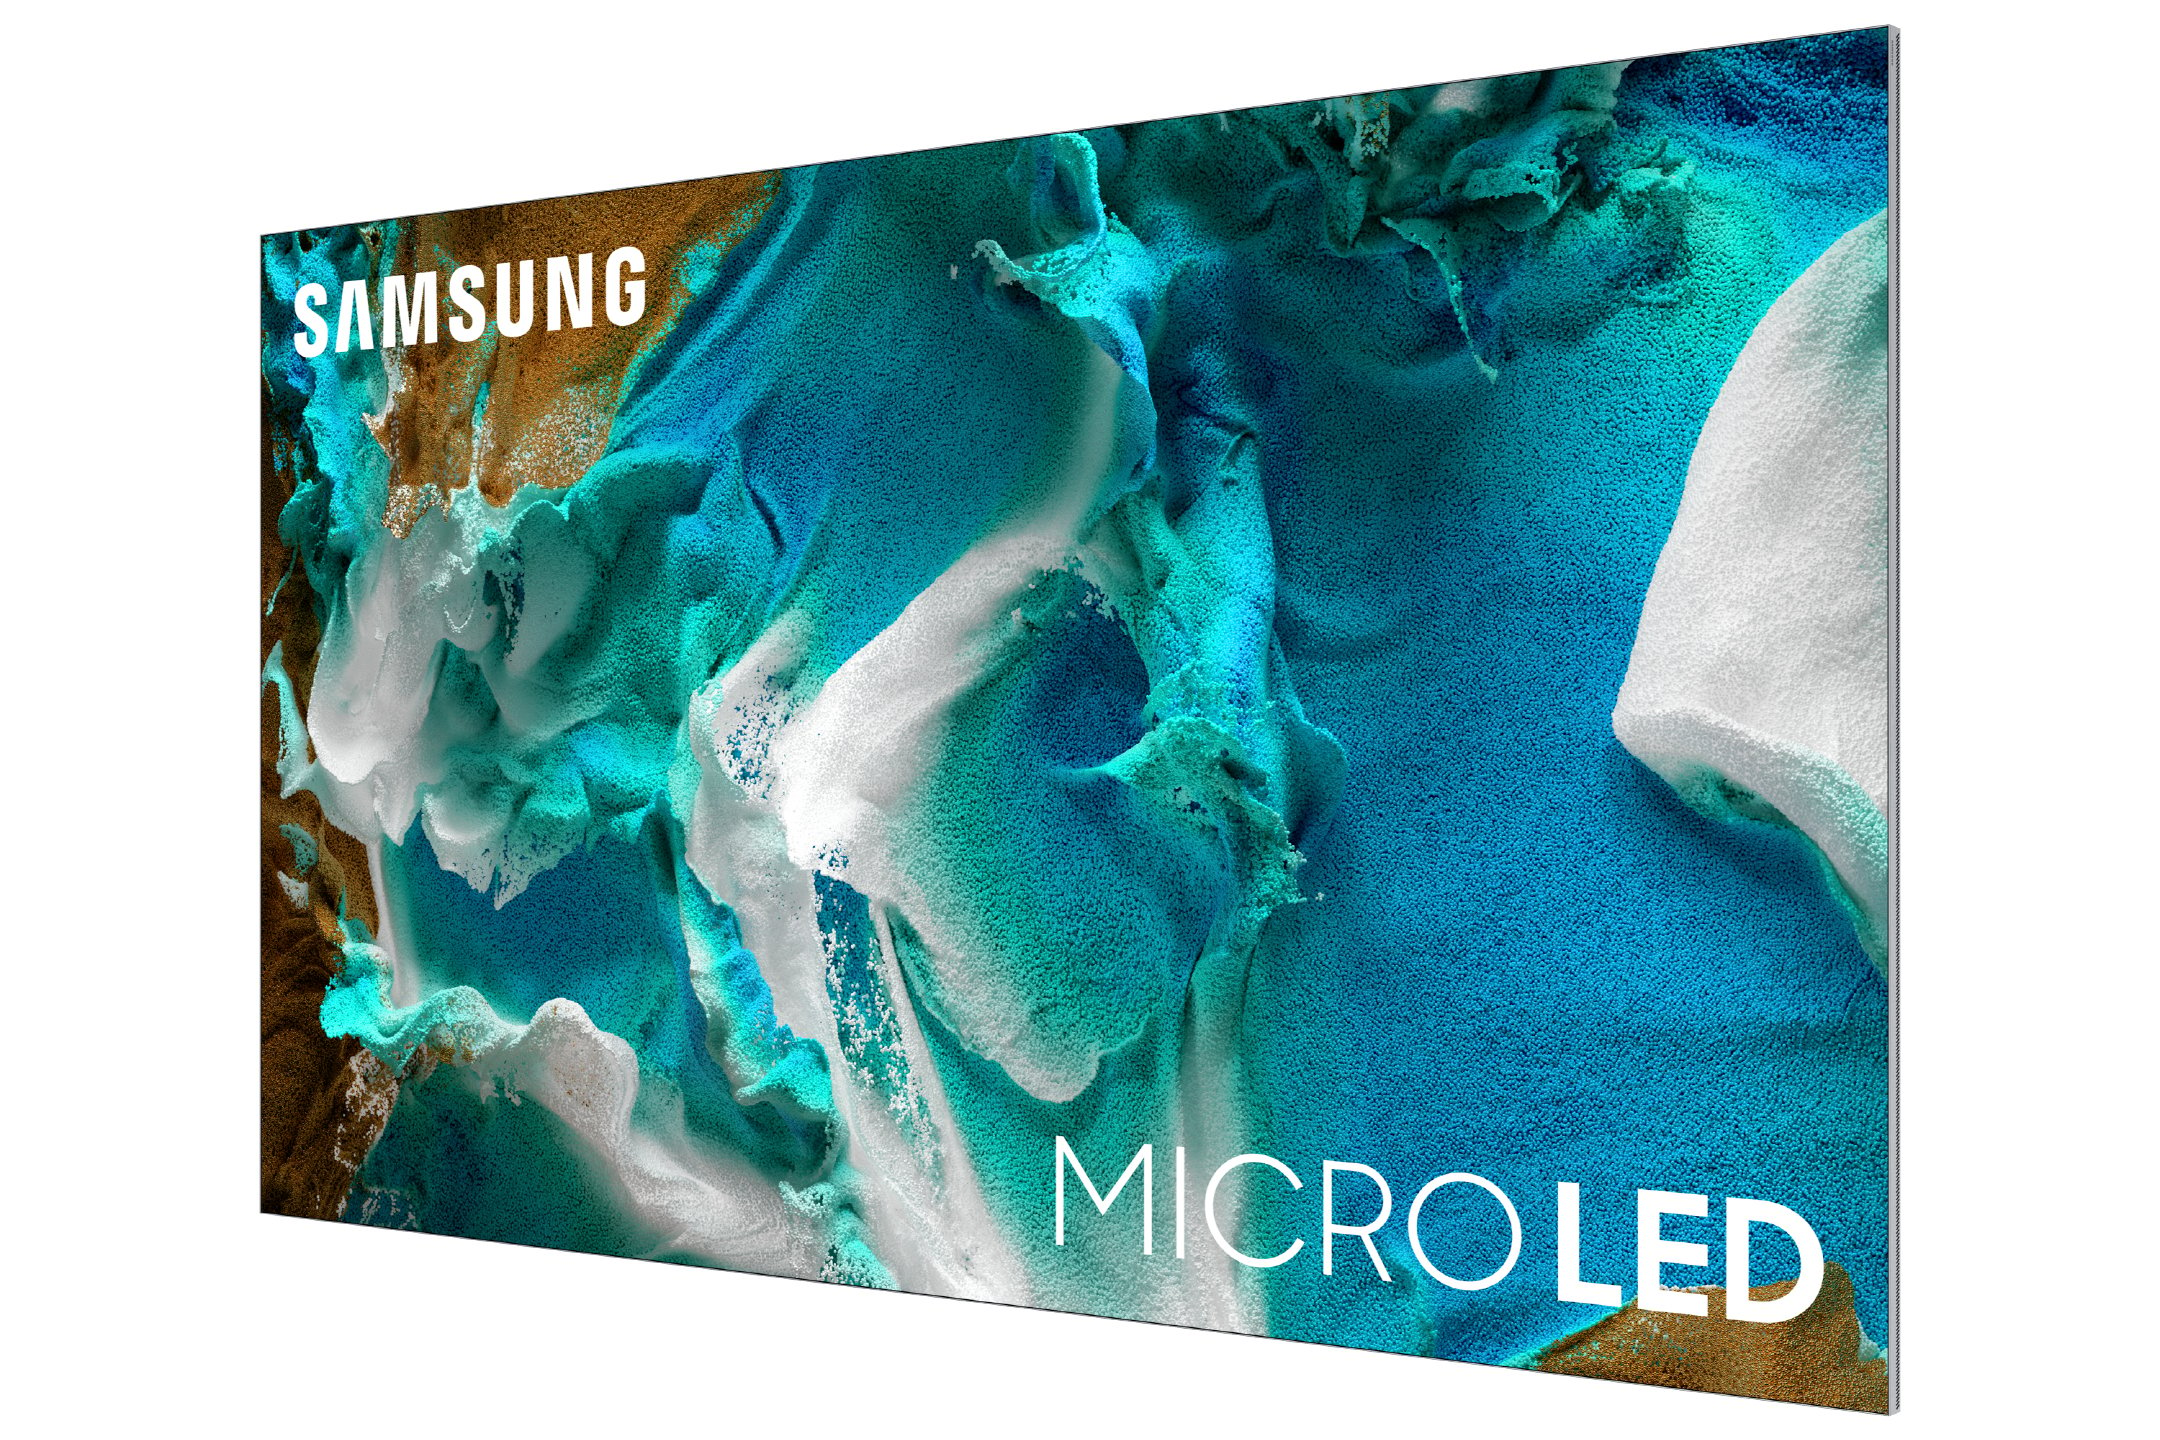 Samsung's microLED panel